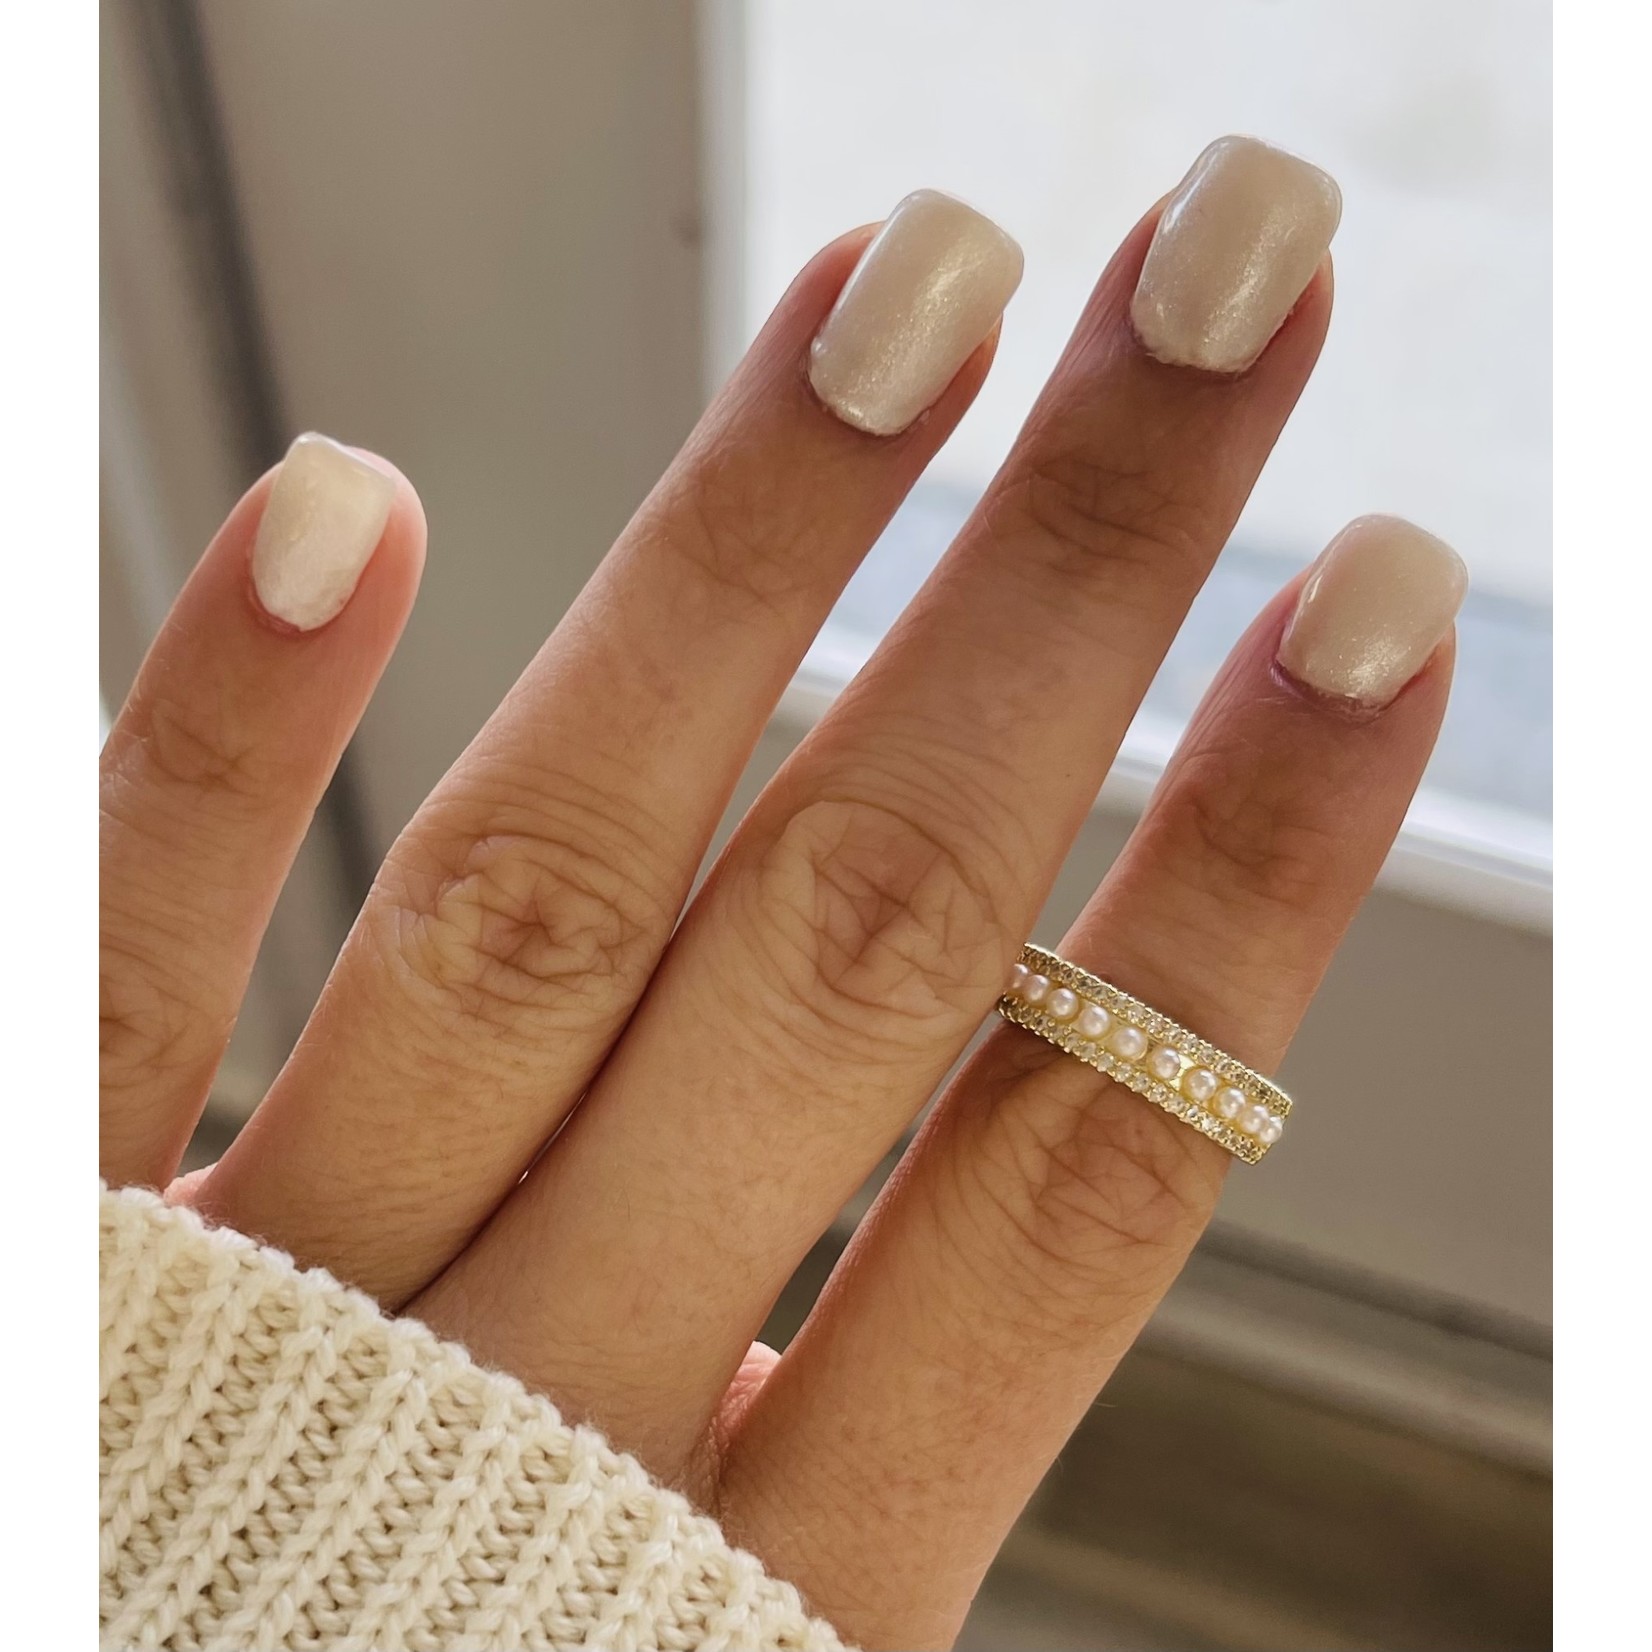 Lauren Kenzie 24 K Gold Plated Pearl Dreams Ring - Adjustable